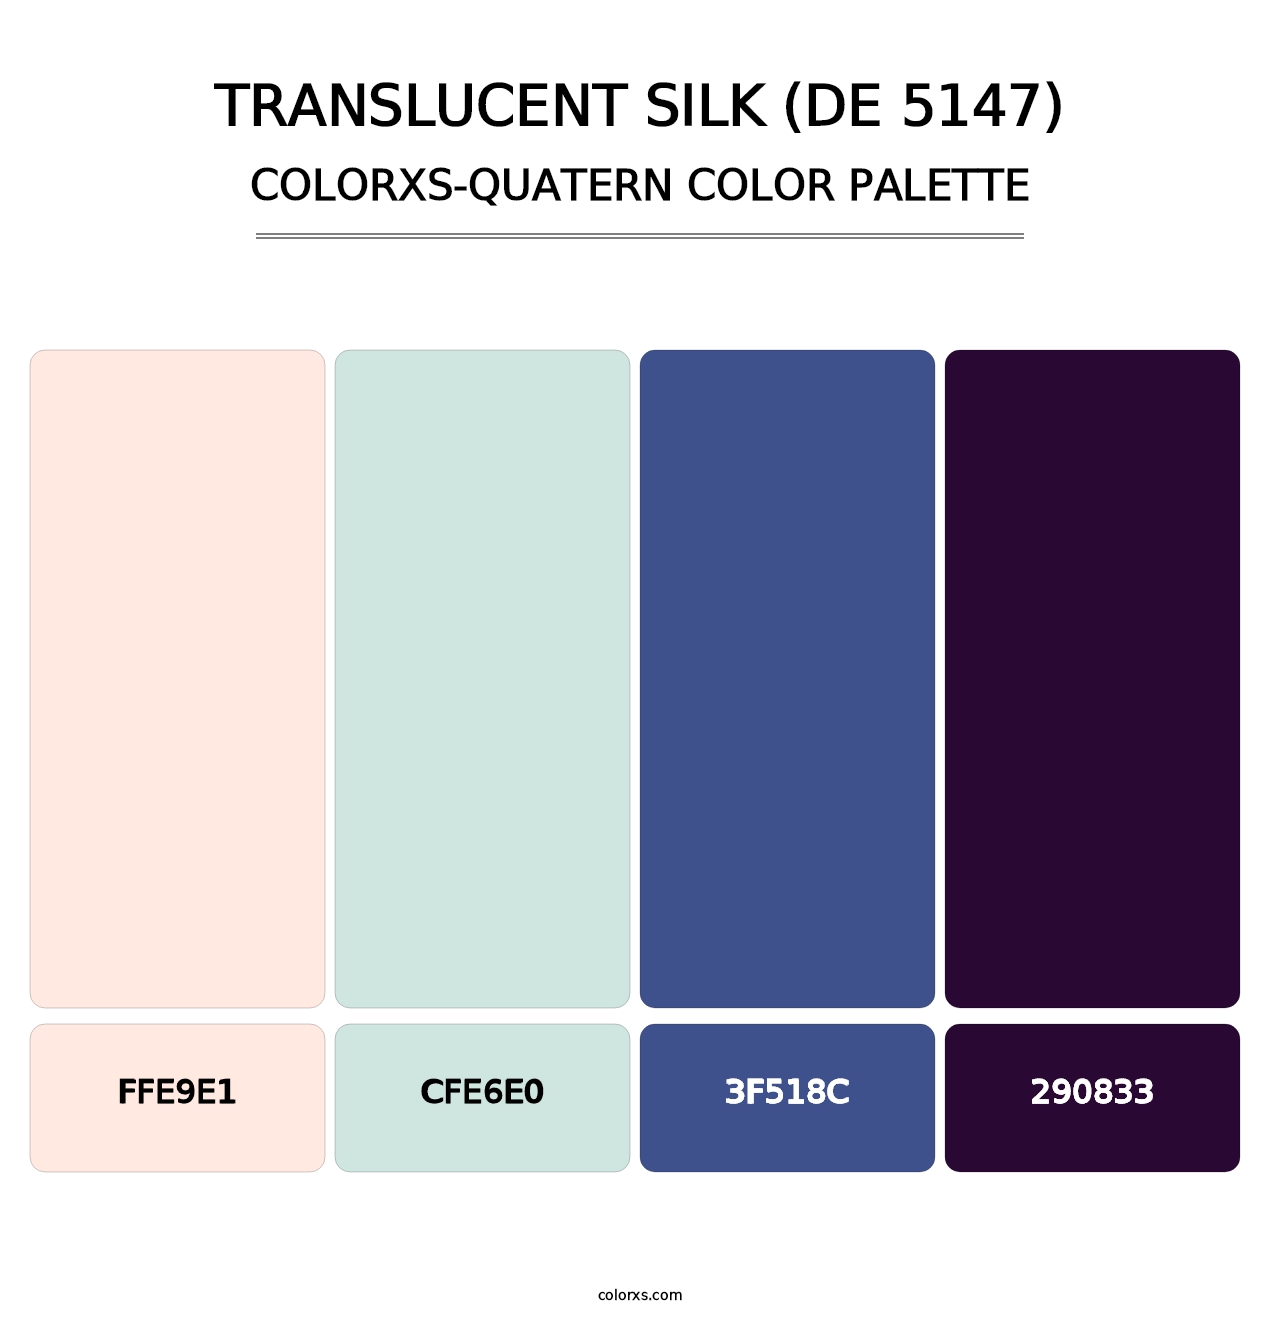 Translucent Silk (DE 5147) - Colorxs Quatern Palette